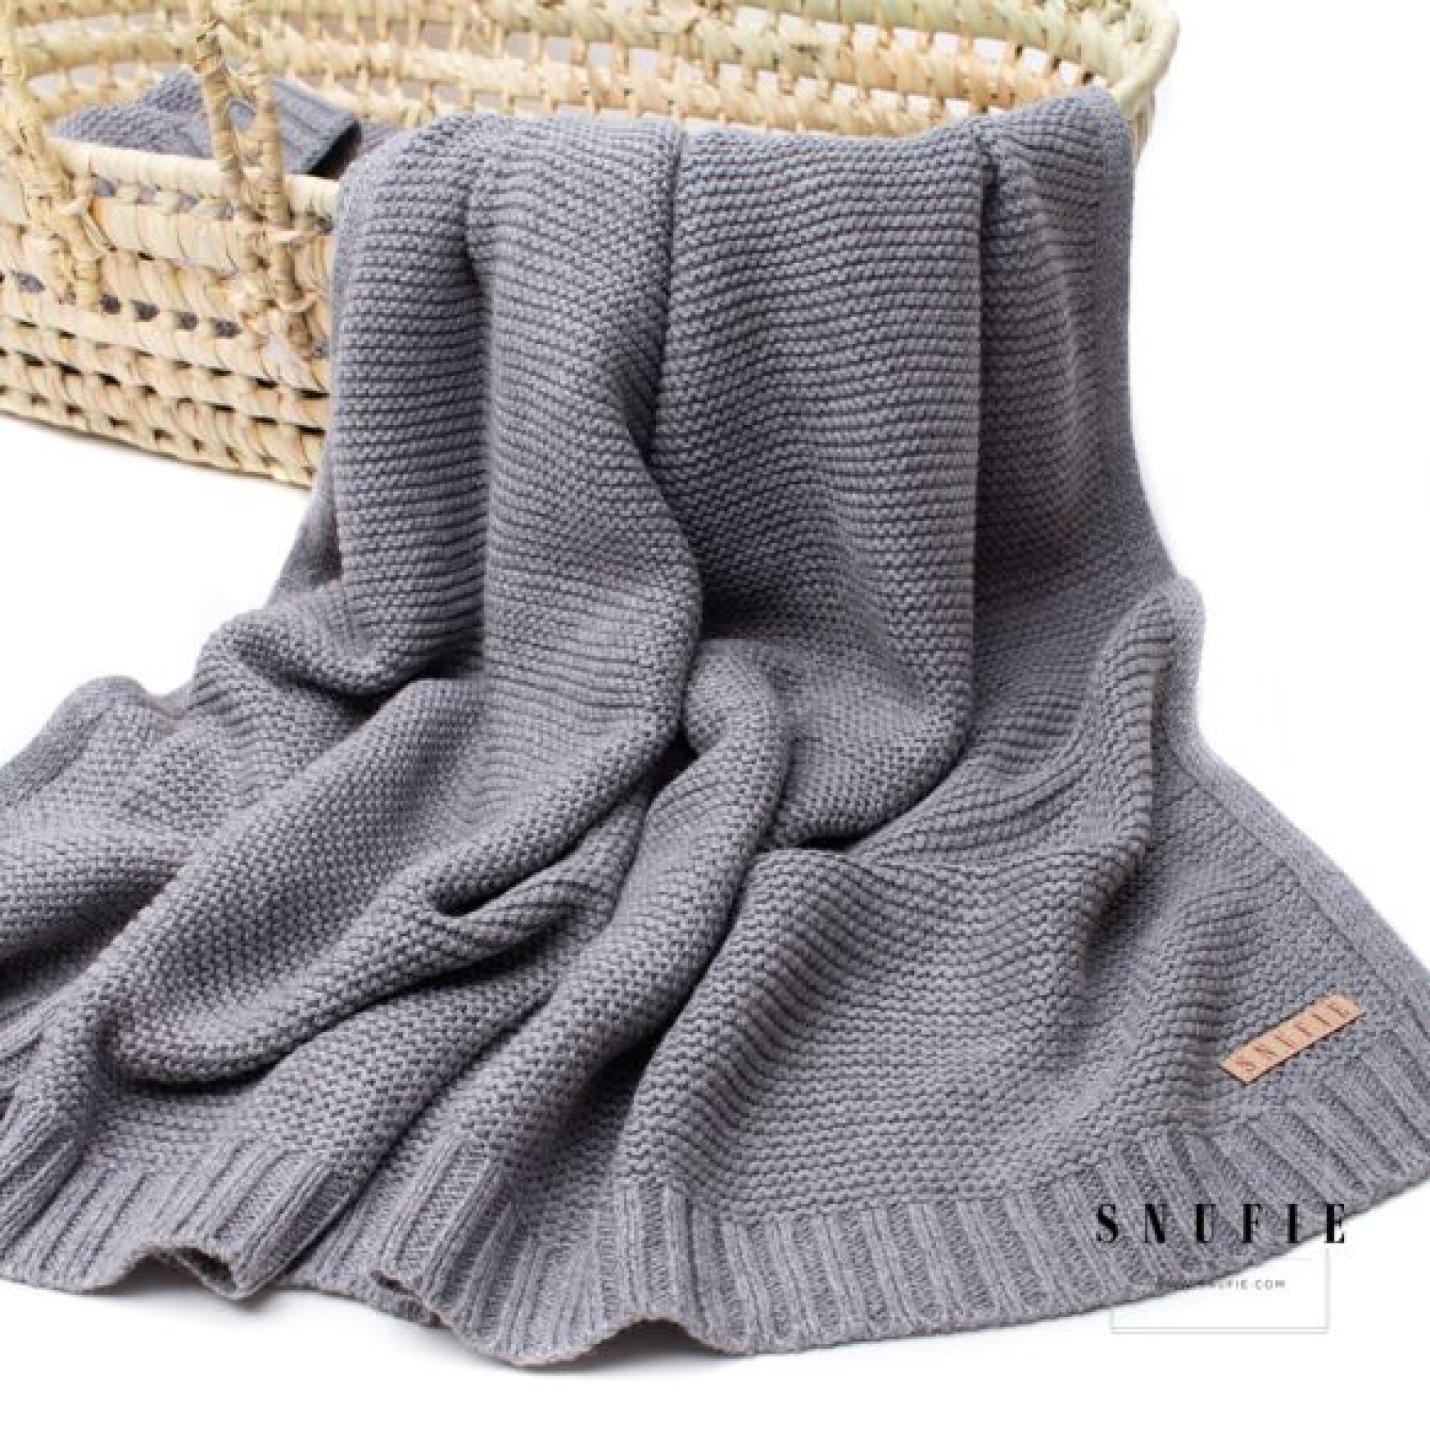 Snufie-Baby-blanket-knitted-Grey-NeoNurses